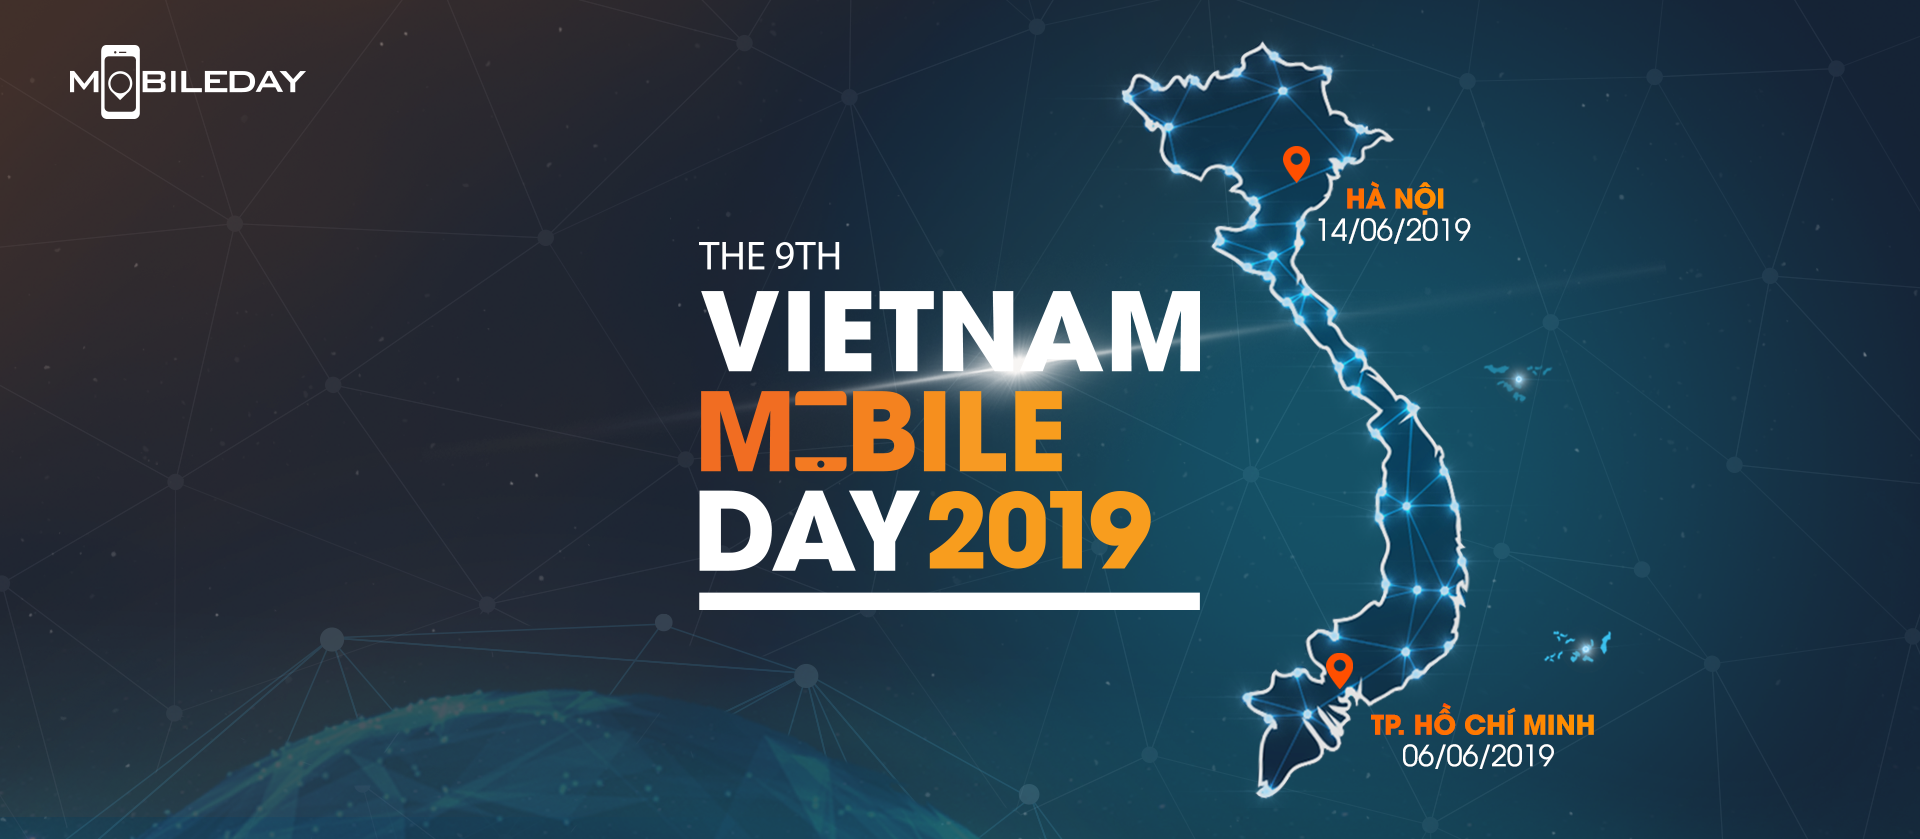 háng 6 năm nay tại hai thành phố Hồ Chí Minh và Hà Nội, đội ngũ ACB sẽ tham dự sự kiện Mobile lớn nhất Việt Nam: Vietnam Mobile Day 2019, hứa hẹn sẽ mang đến làn sóng FinTech mới cũng như là cơ hội gặp gỡ và ứng tuyển cho cộng đồng hội những người đam mê Kỹ thuật số ở Việt Nam. Đừng bỏ lỡ nhé!